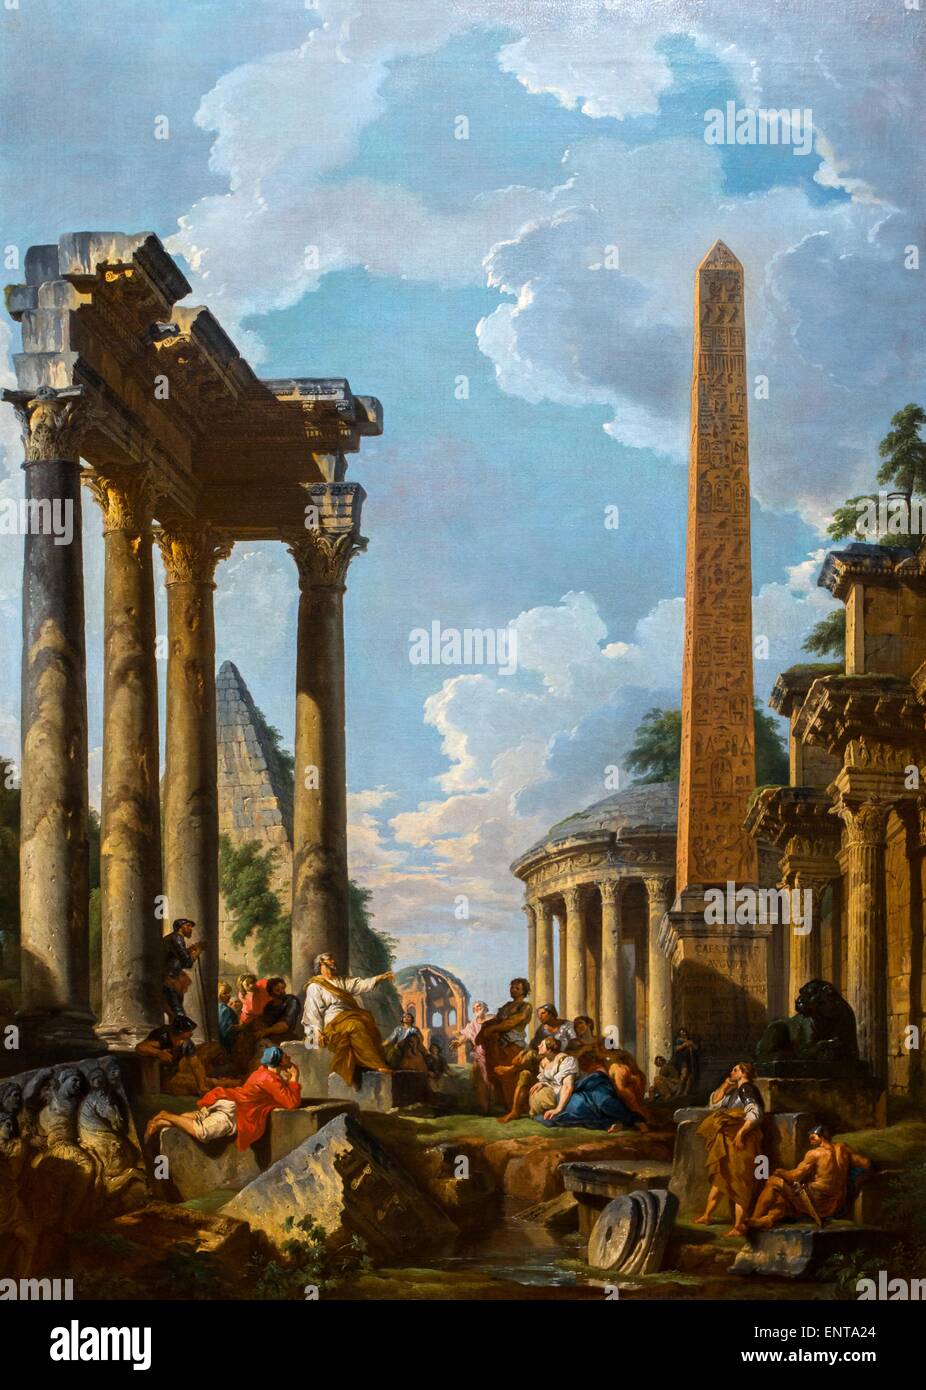 Architektonische Capriccio mit Prediger in römischen Ruinen 10.02.2013 - Sammlung des 18. Jahrhunderts Stockfoto